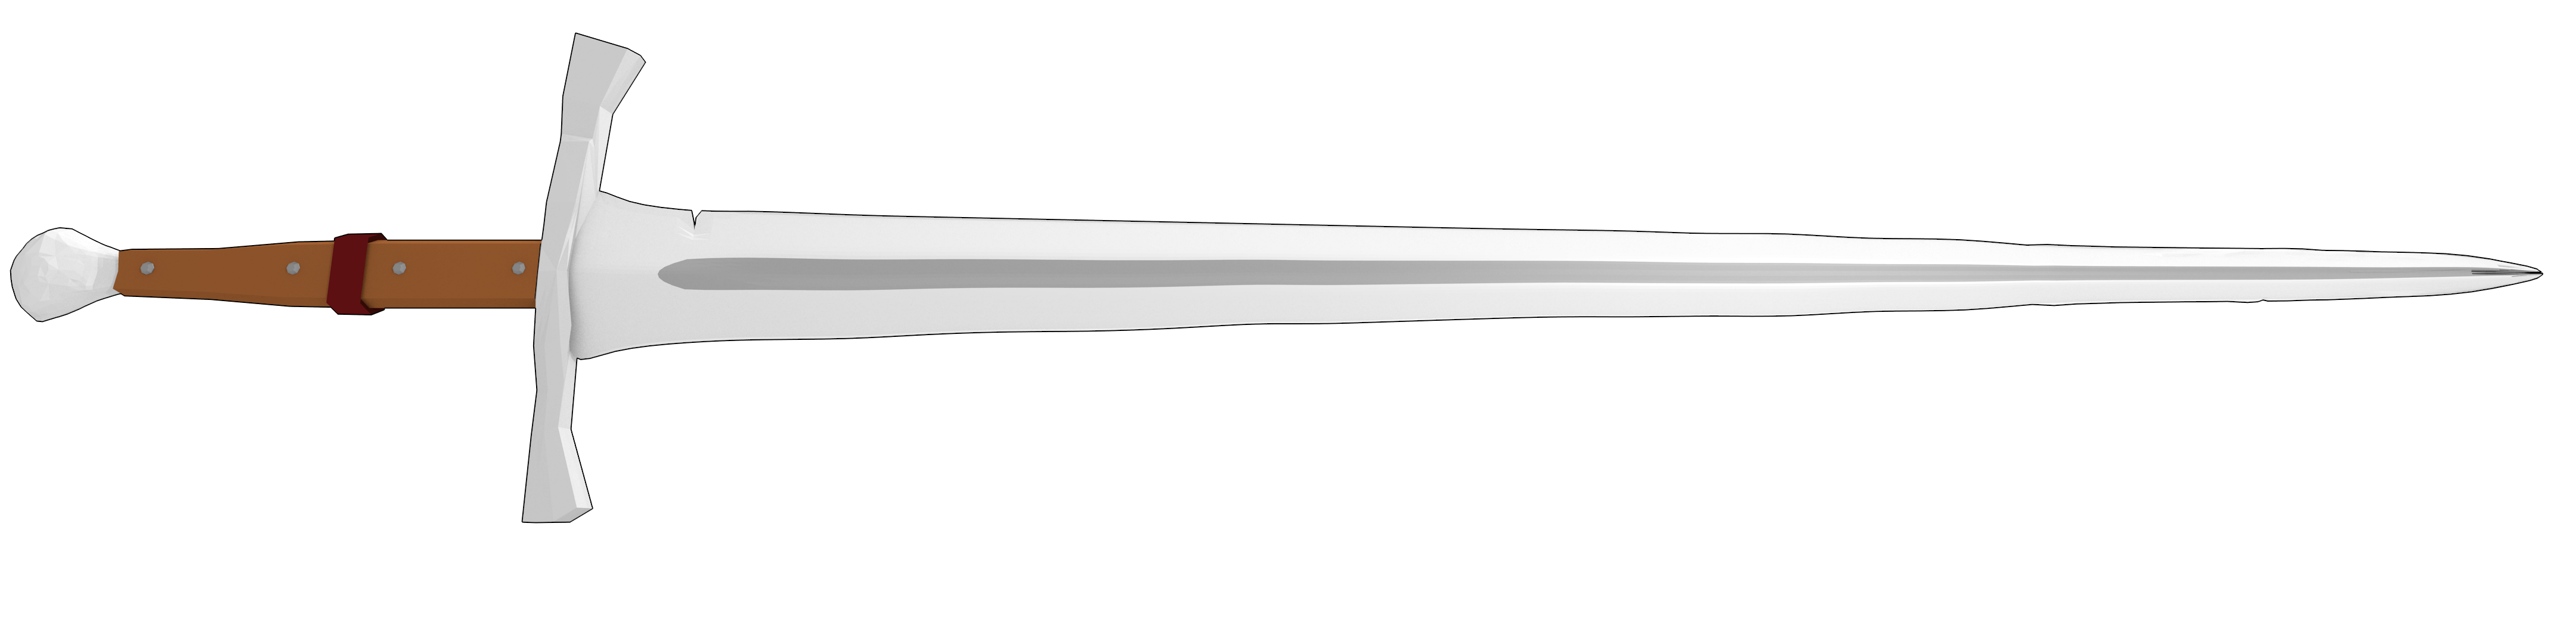 sword3.png